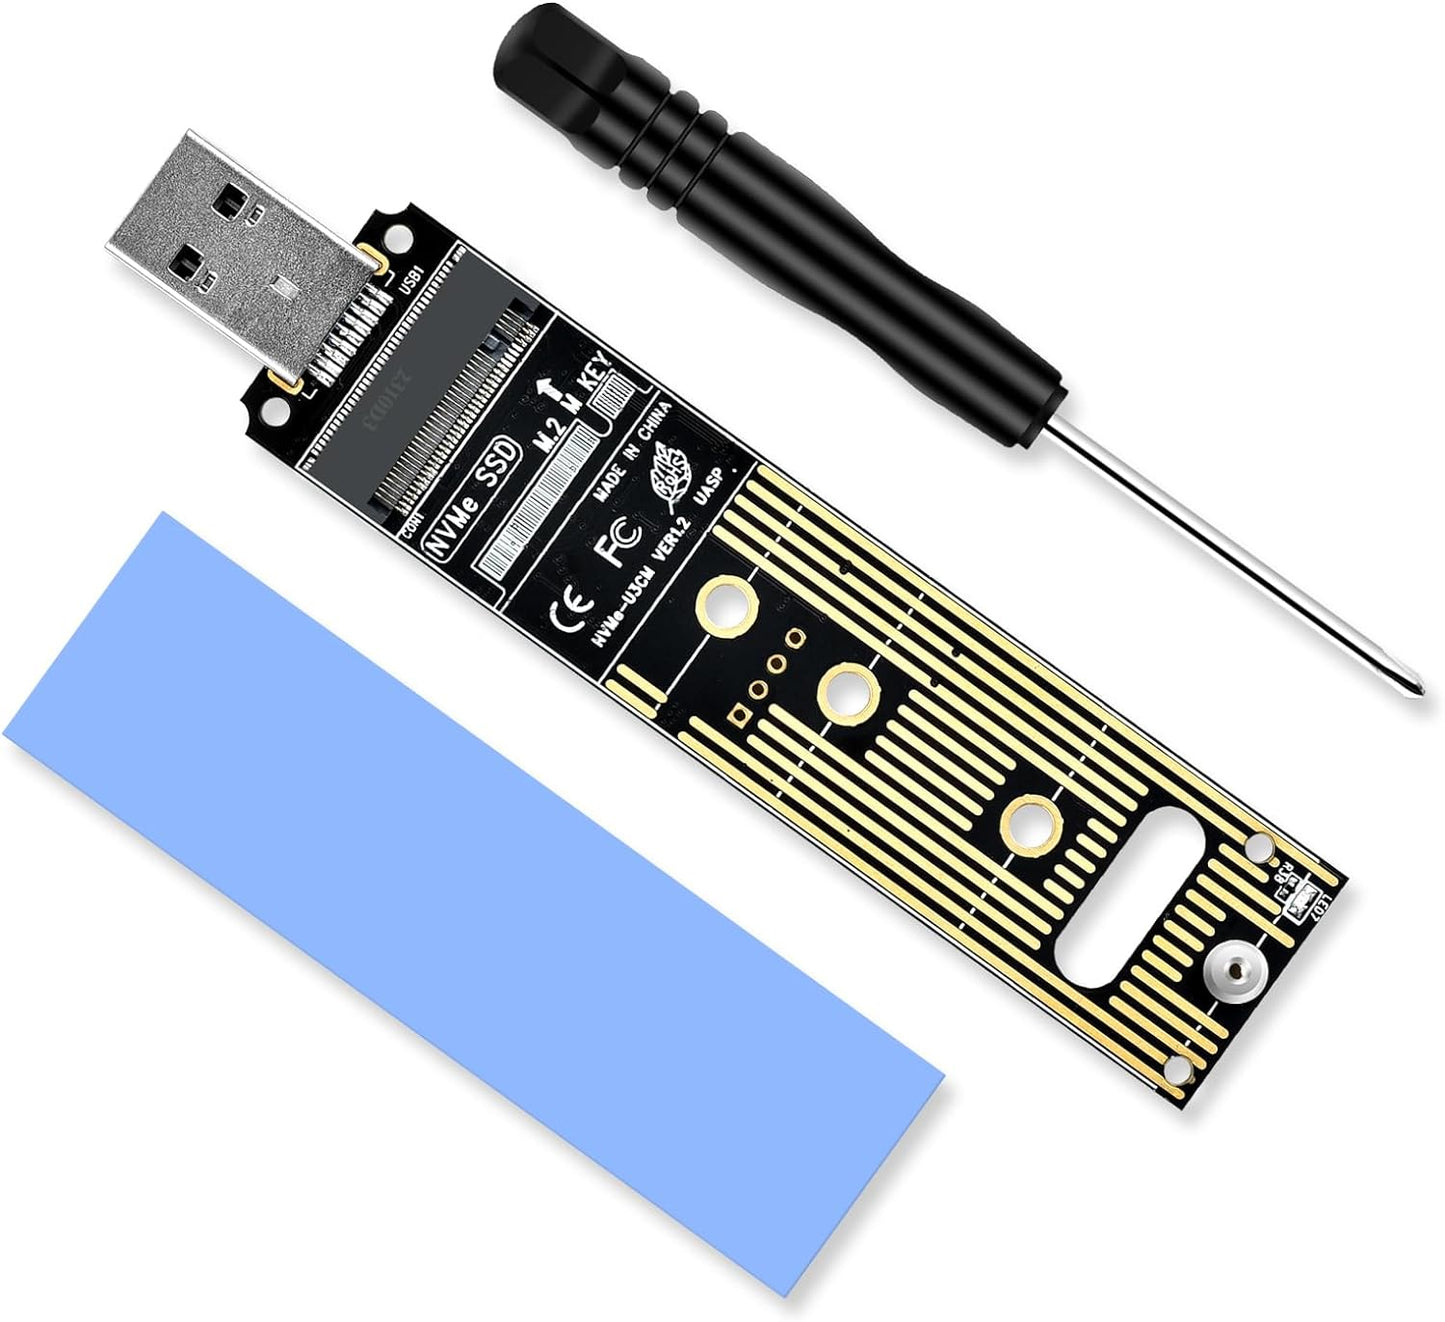 M.2 USB 変換アダプタ NVME/PCIE 対応 USB3.1 Gen2 10Gbps USB3.0 USB2.0 m.2 usb 変換 m.2変換アダプター JMS583高性能チップ M key 2230/2242/2260/2280 SSD対応 アルミ USB A